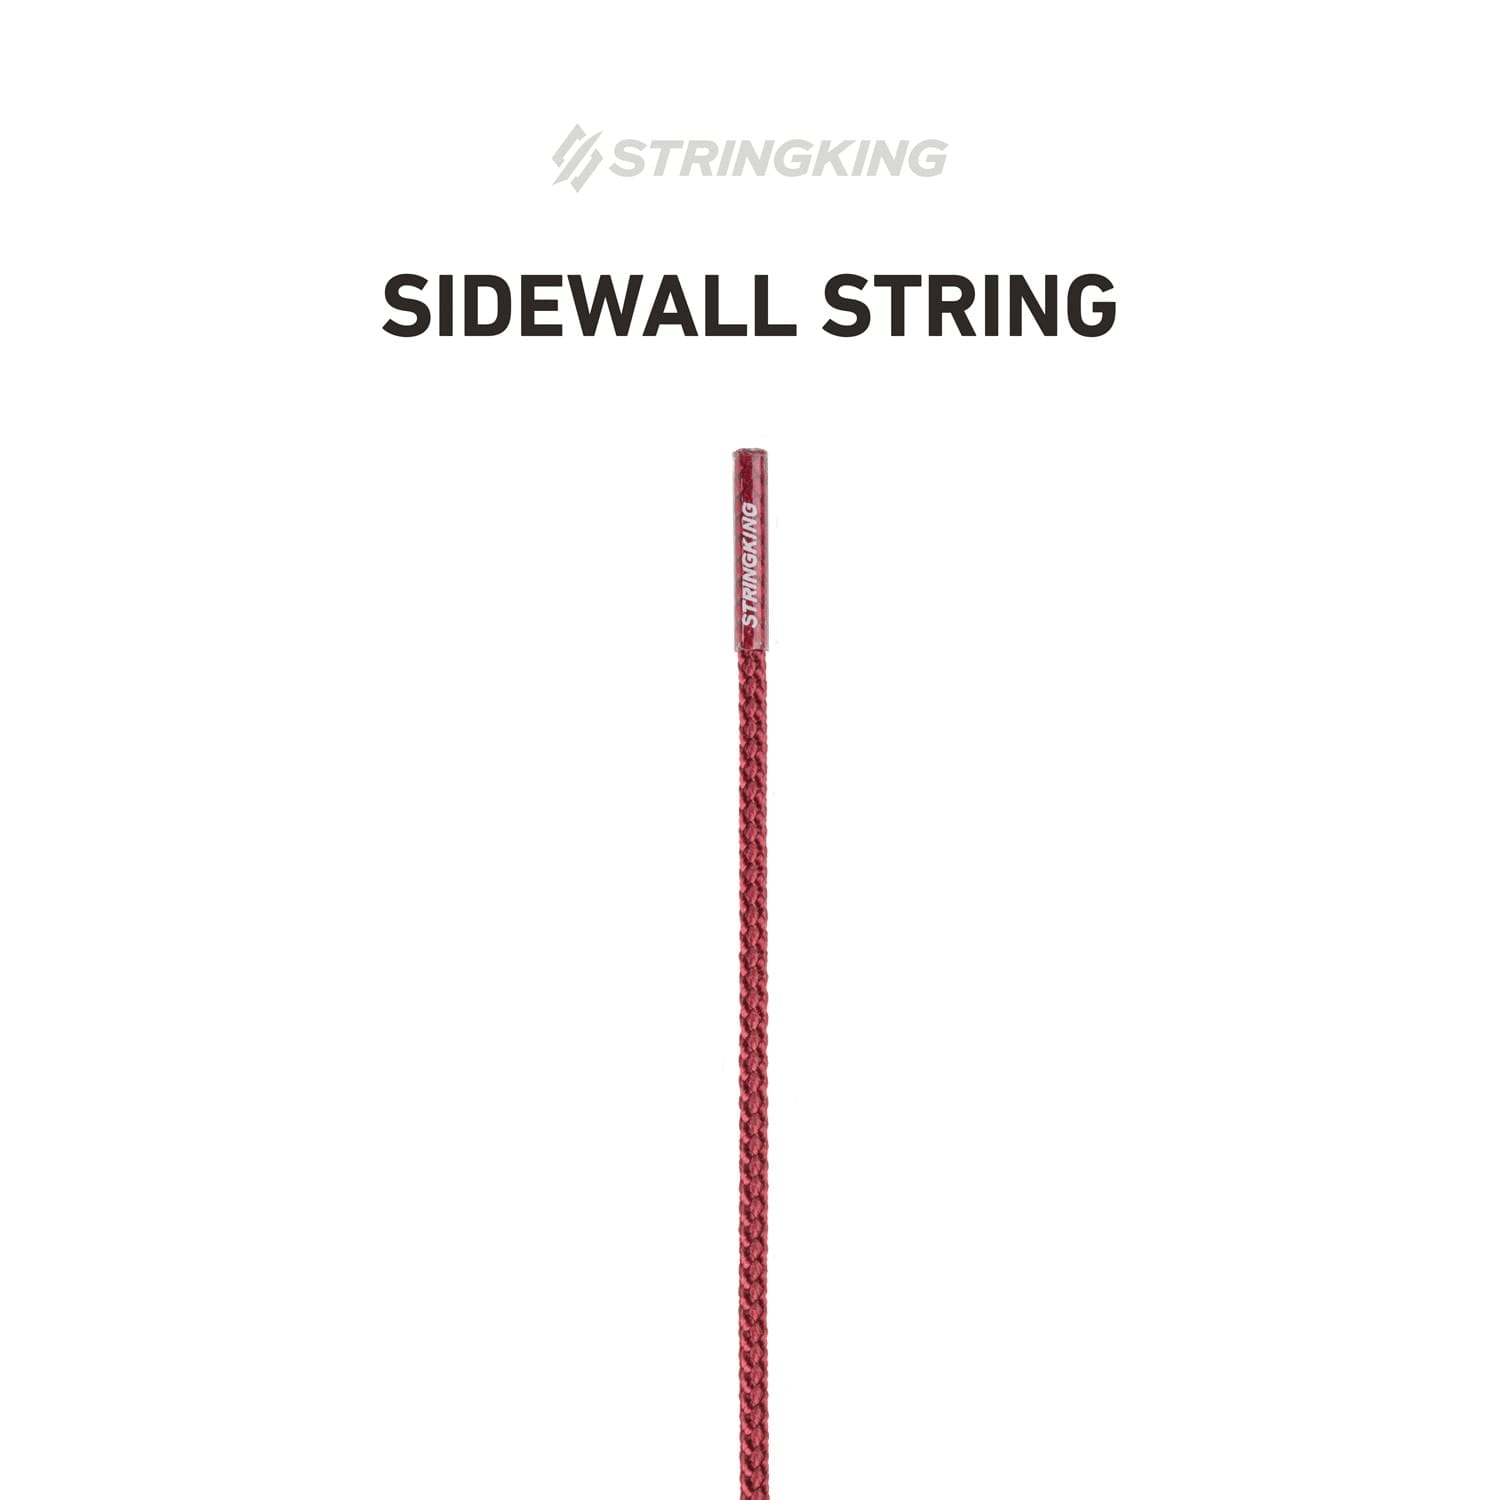 sidewall-string-specialty-retailers-maroon.jpg